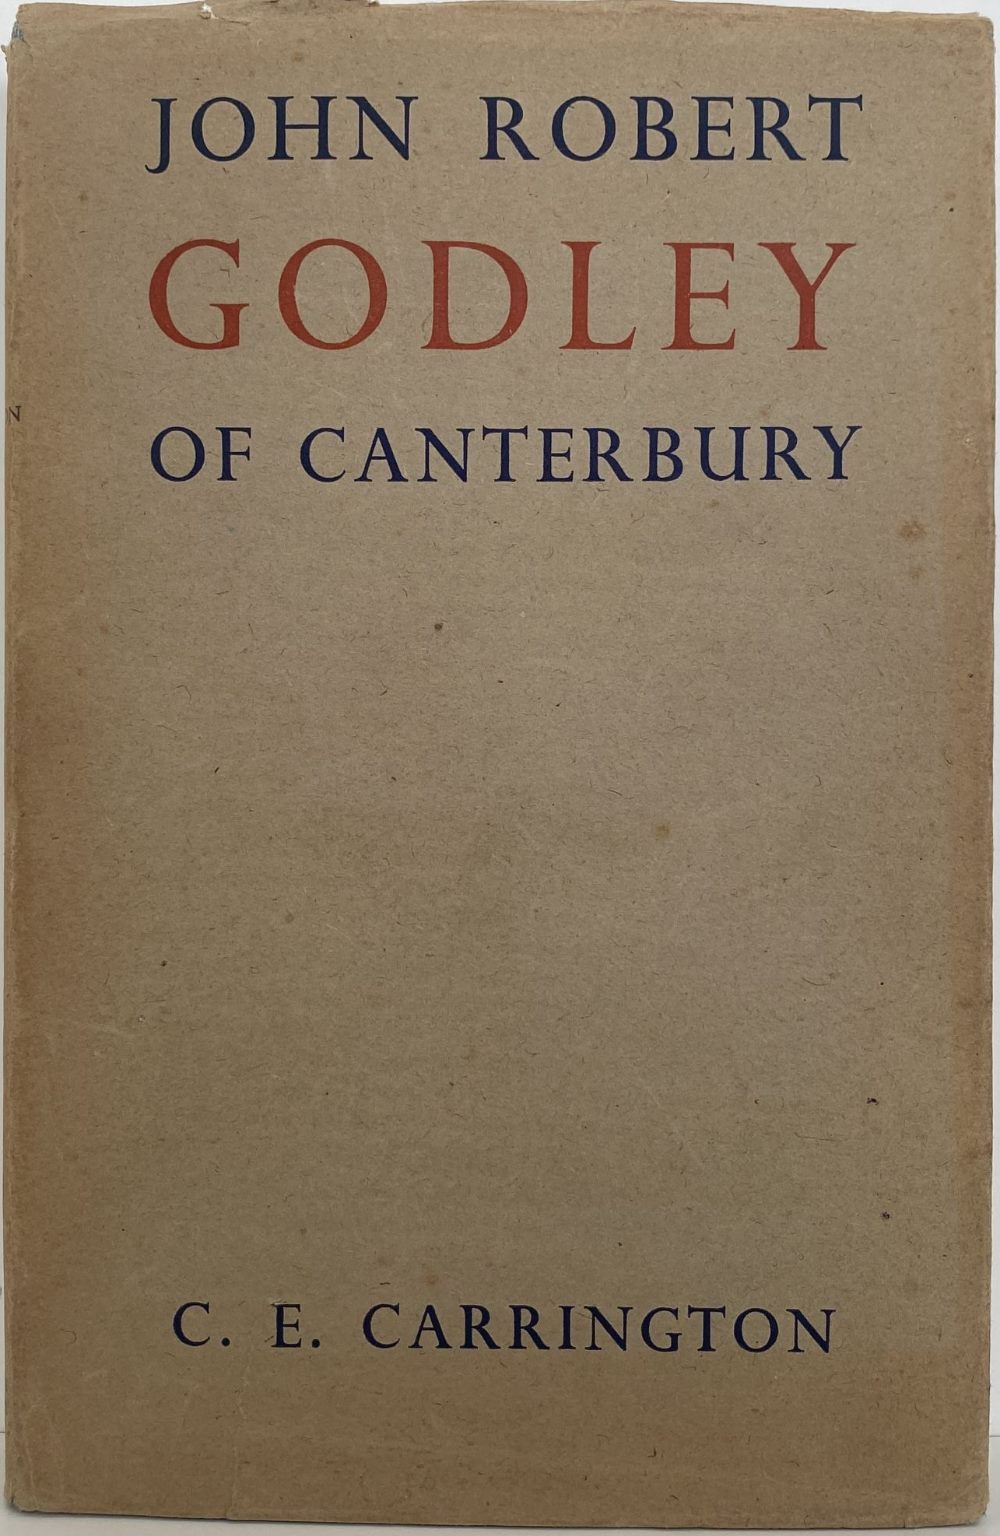 JOHN ROBERT GODLEY of Canterbury